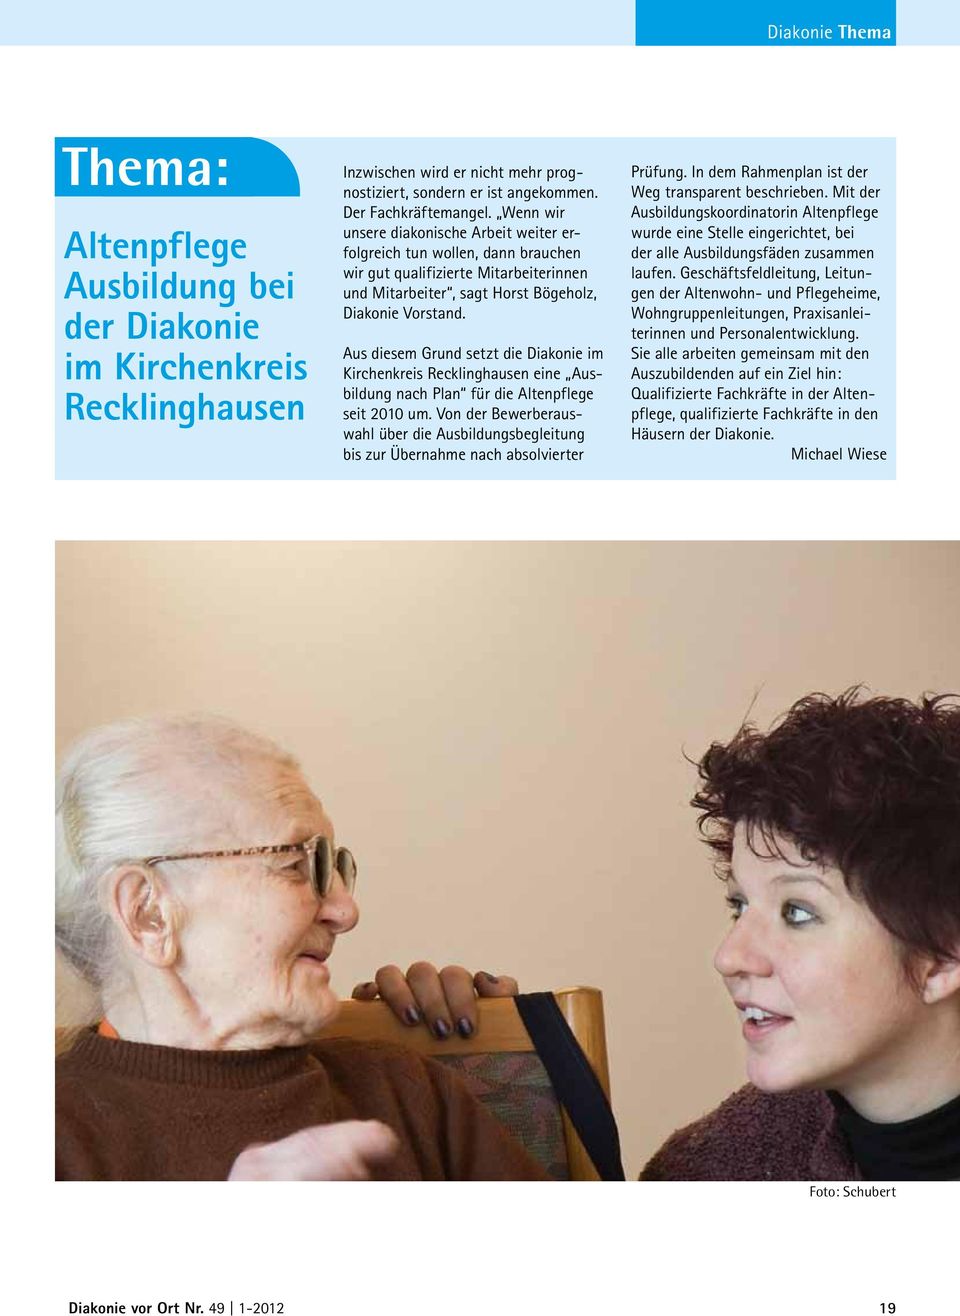 Aus diesem Grund setzt die Diakonie im Kirchenkreis Recklinghausen eine Ausbildung nach Plan für die Altenpflege seit 2010 um.